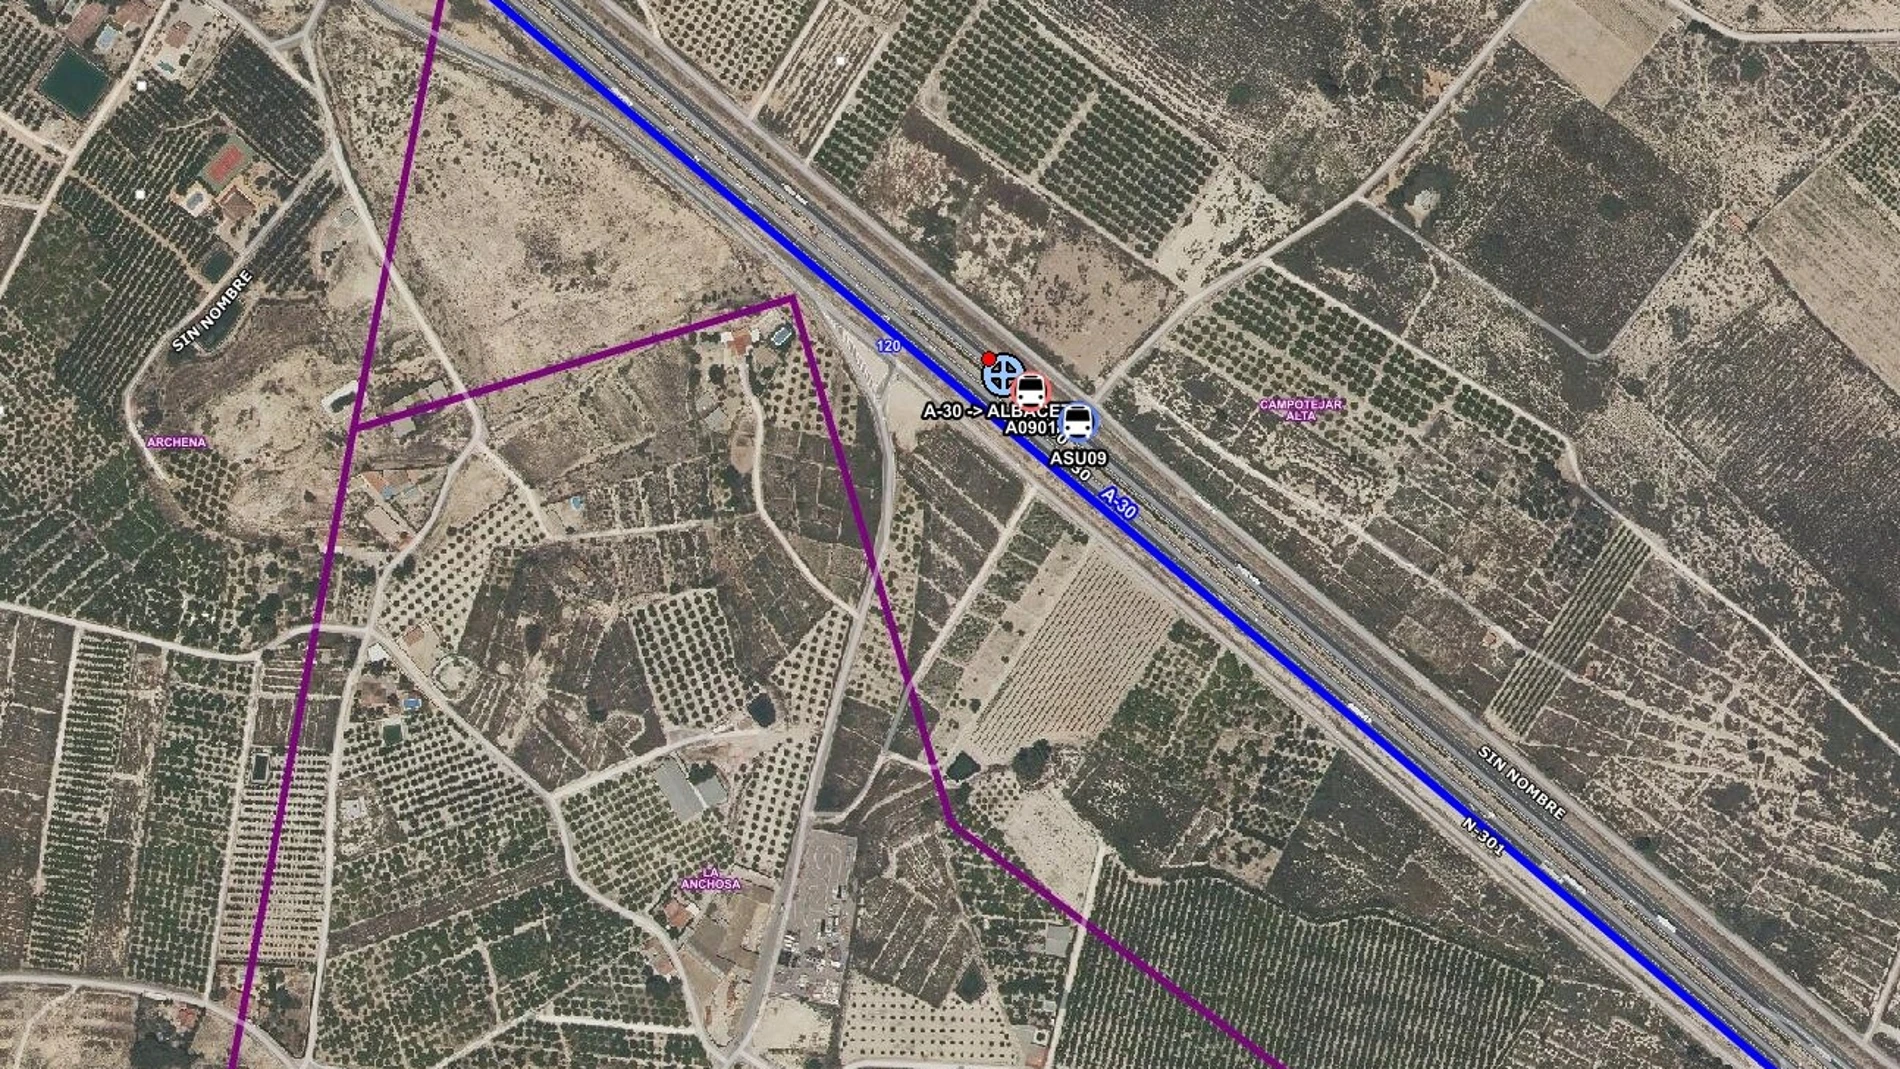 Punto de la autovía A-30 donde se ha producido una colisión múltiple, en Archena
CENTRO DE COORDINACIÓN DE EMERGE
09/05/2023